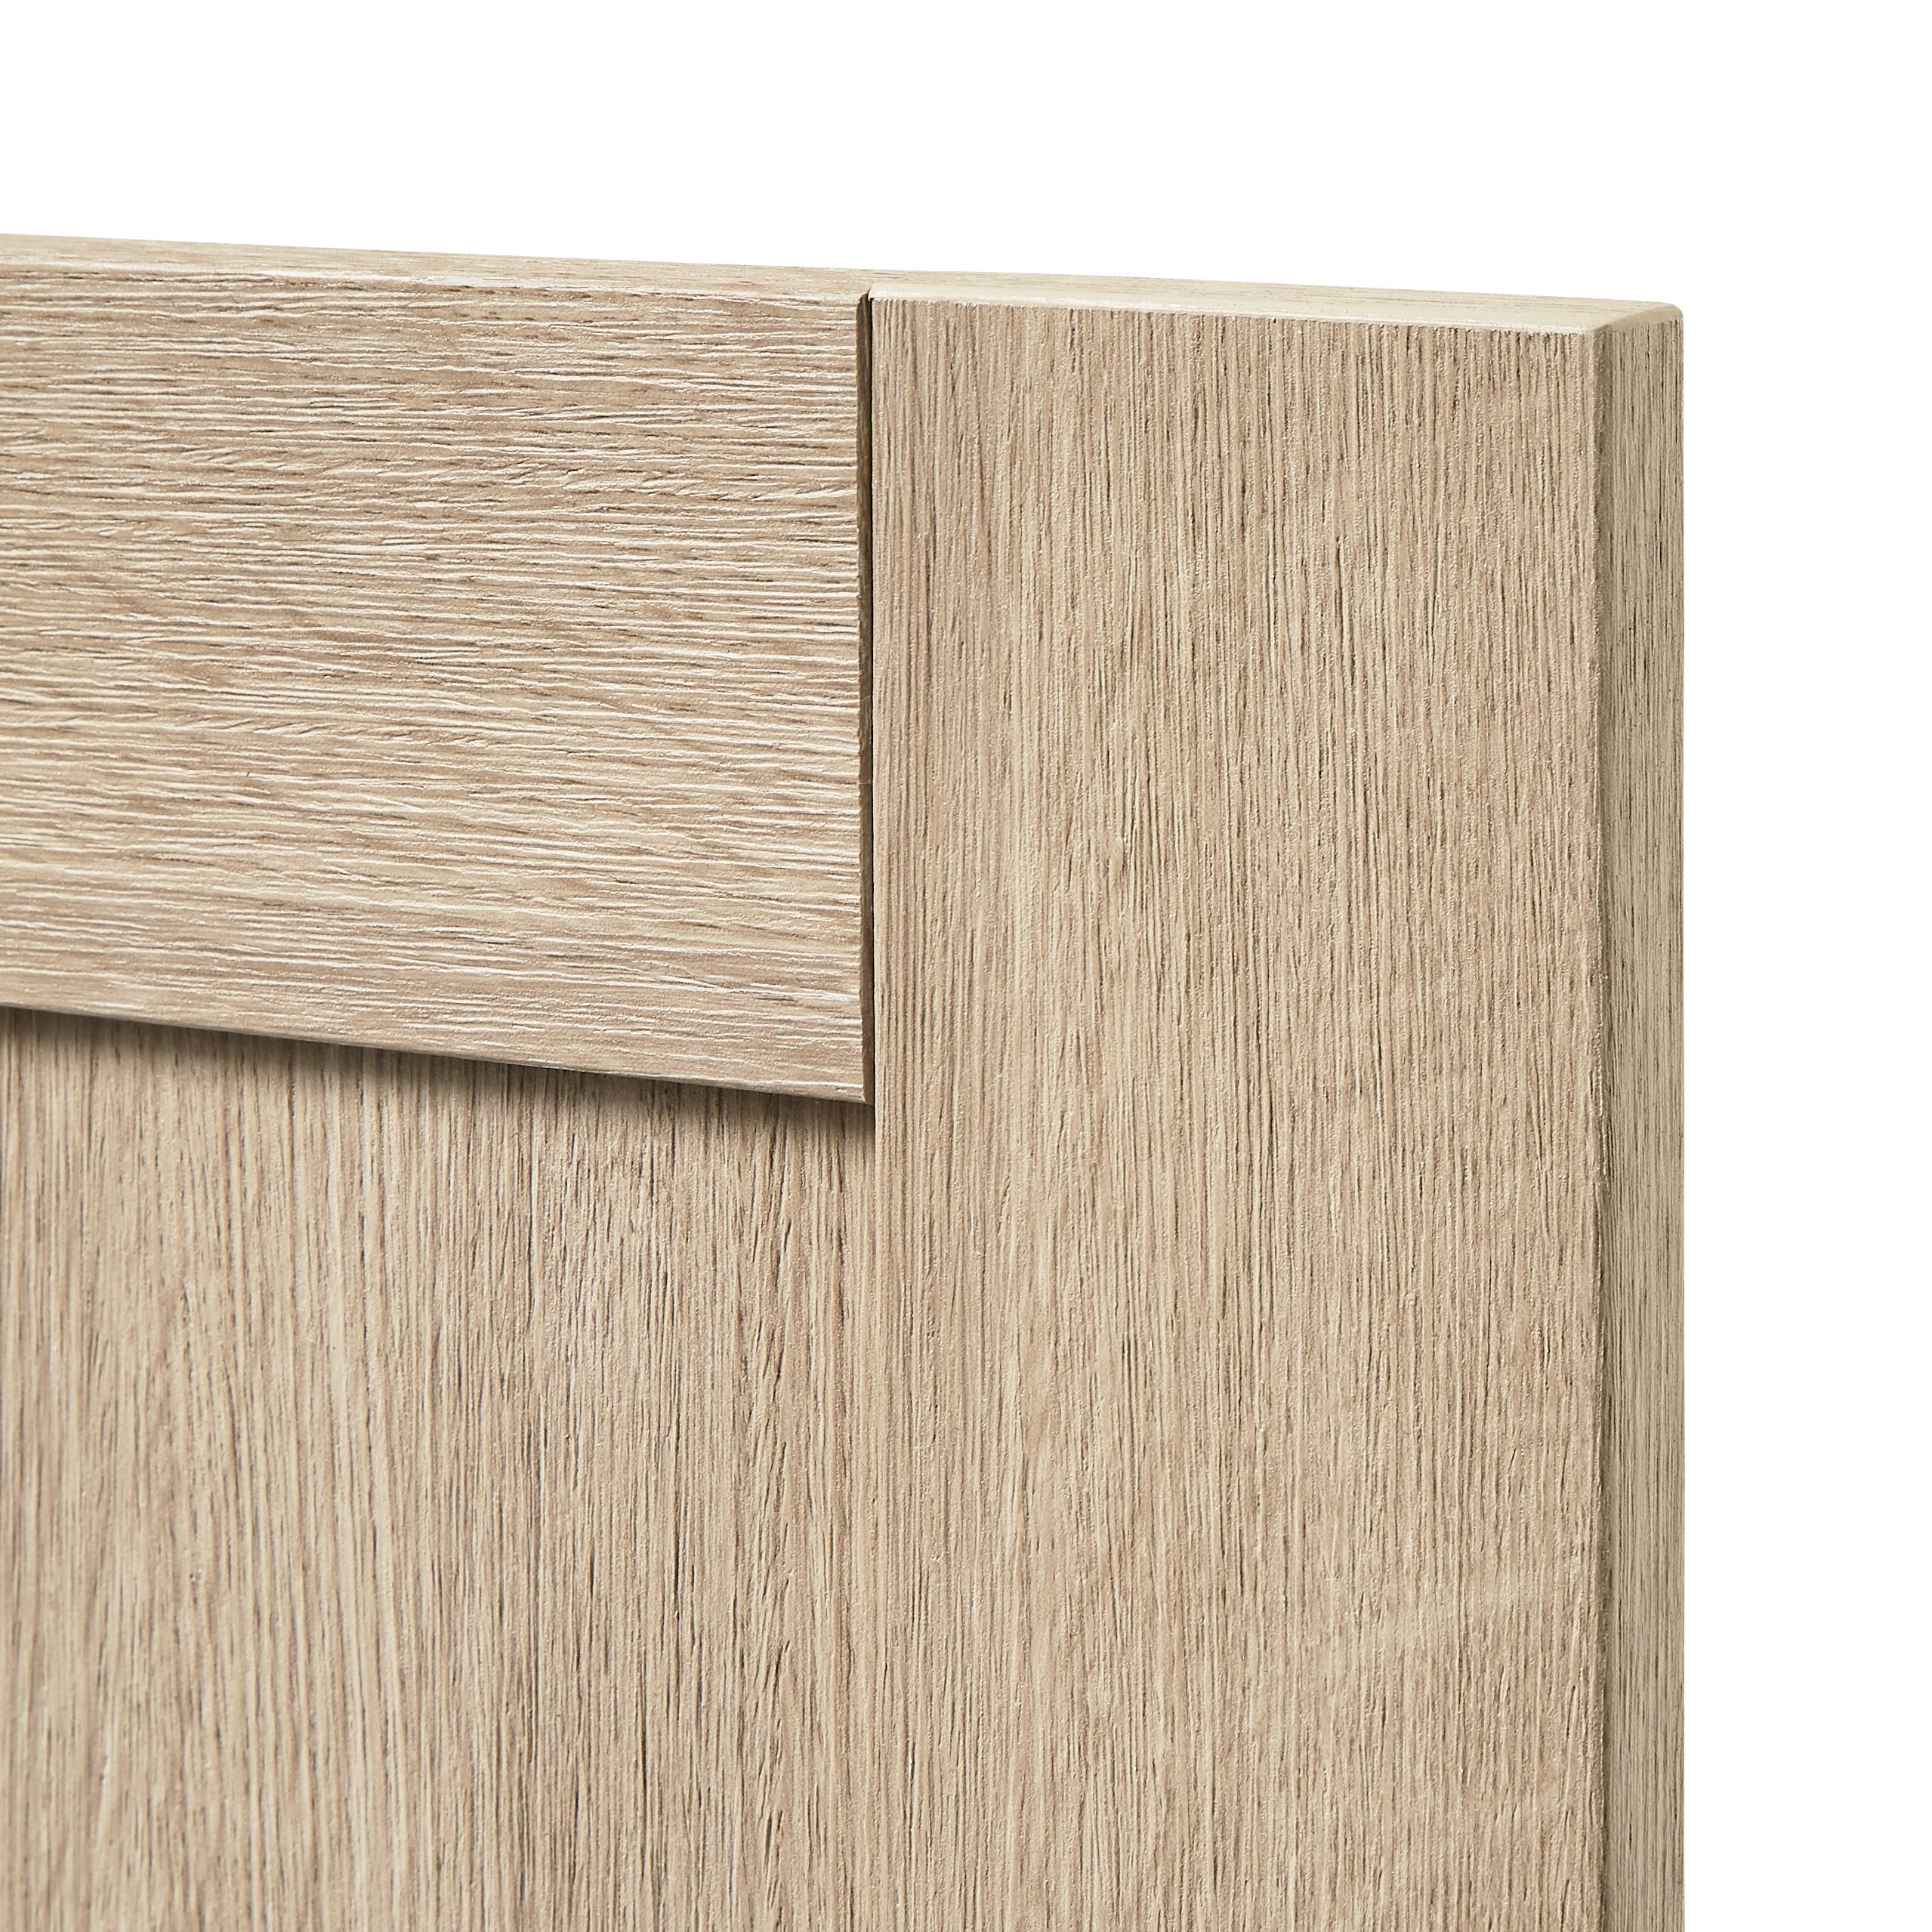 GoodHome Alpinia Oak effect shaker Appliance Cabinet door (W)600mm (H)687mm (T)18mm